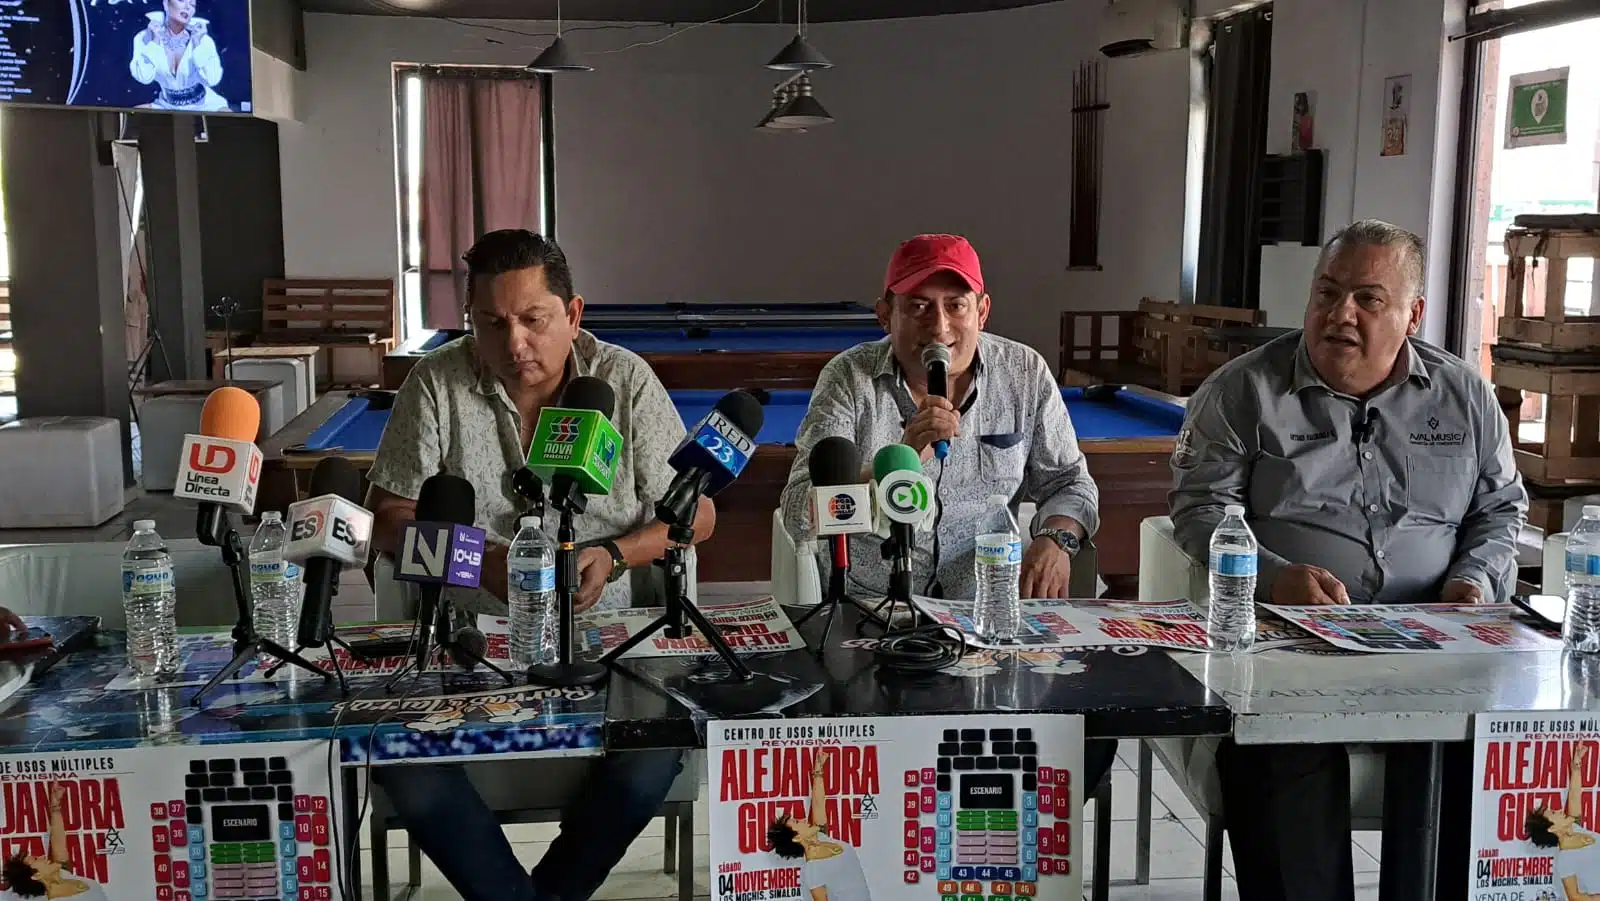 Conferencia de prensa Alejandra Guzmán 